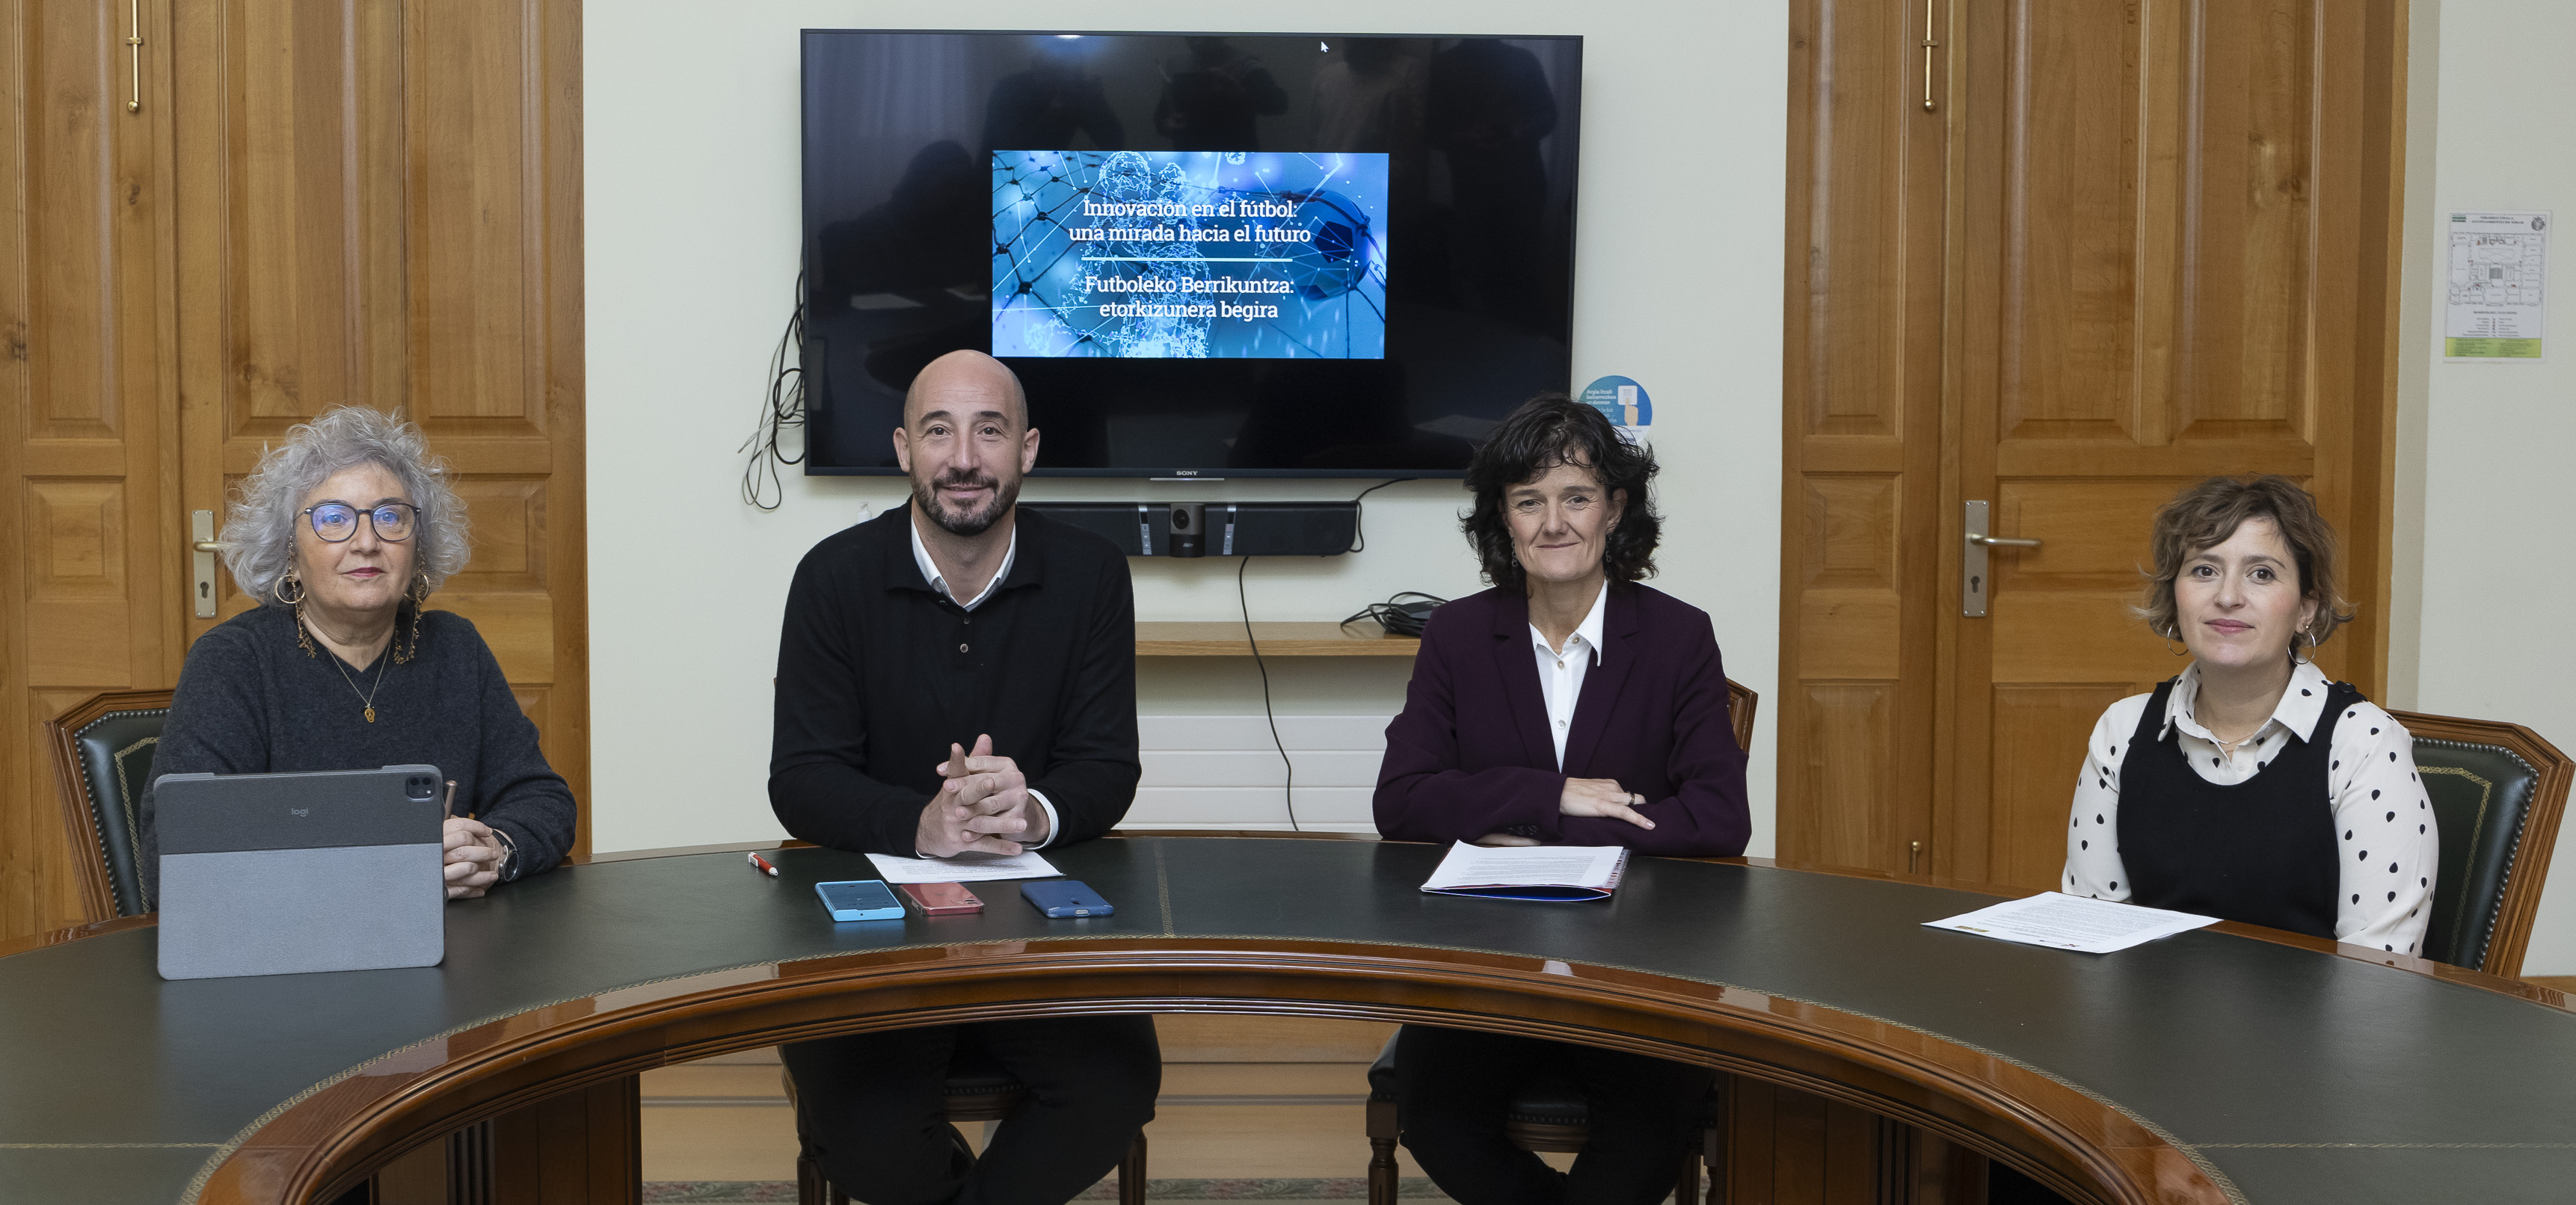 El Ayuntamiento de Eibar y BIC Gipuzkoa organizan una Jornada con el objetivo de debatir sobre la innovación en la industria del fútbol